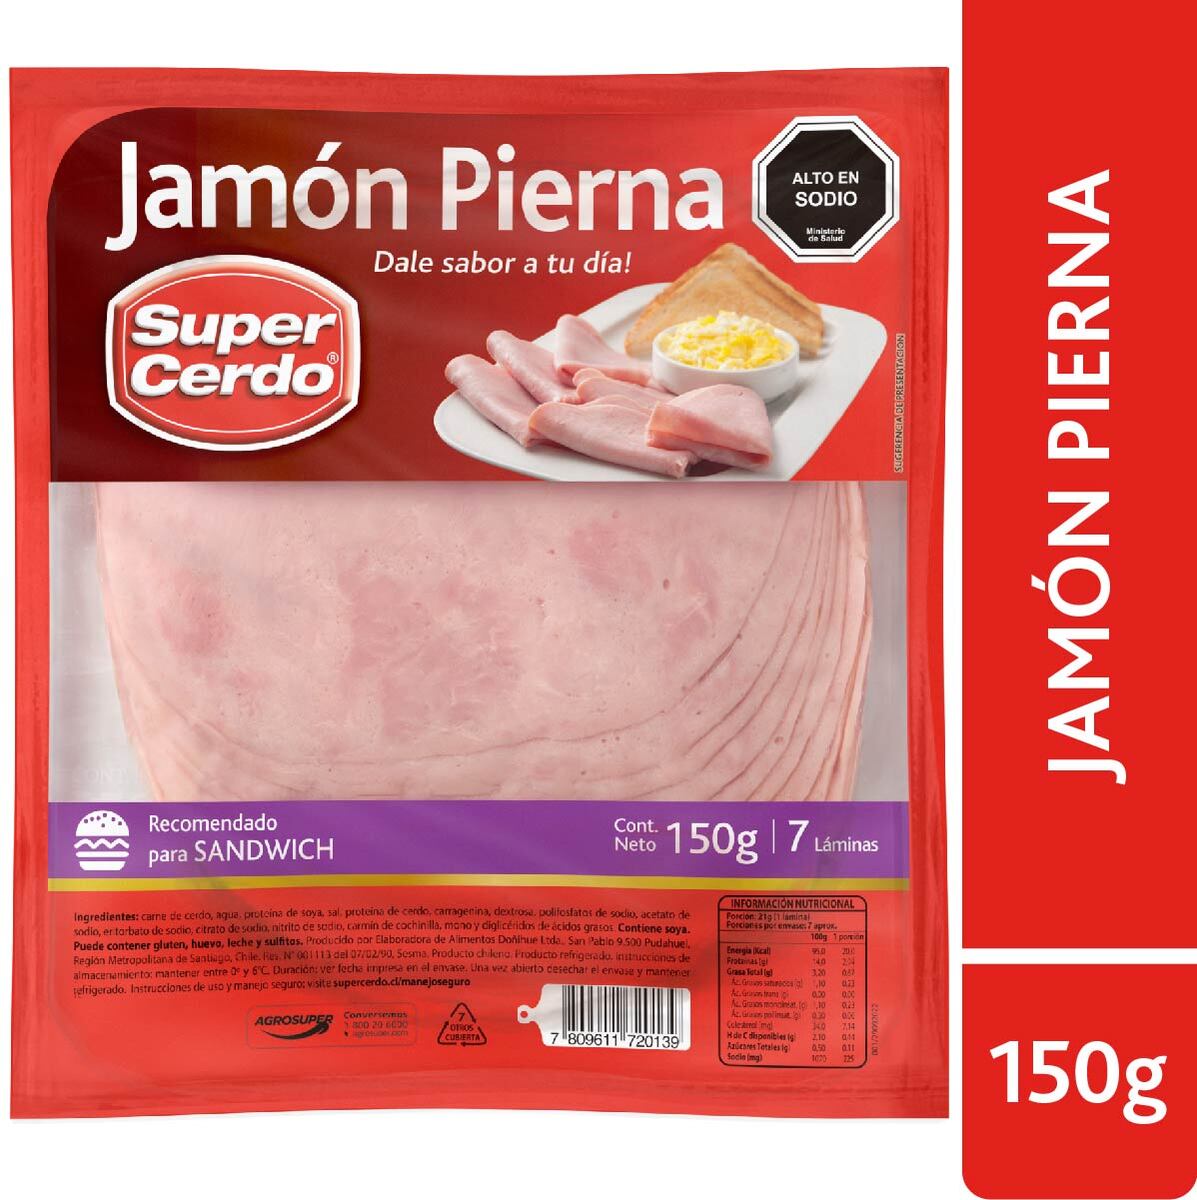 Jamon Pierna de Cerdo Laminado